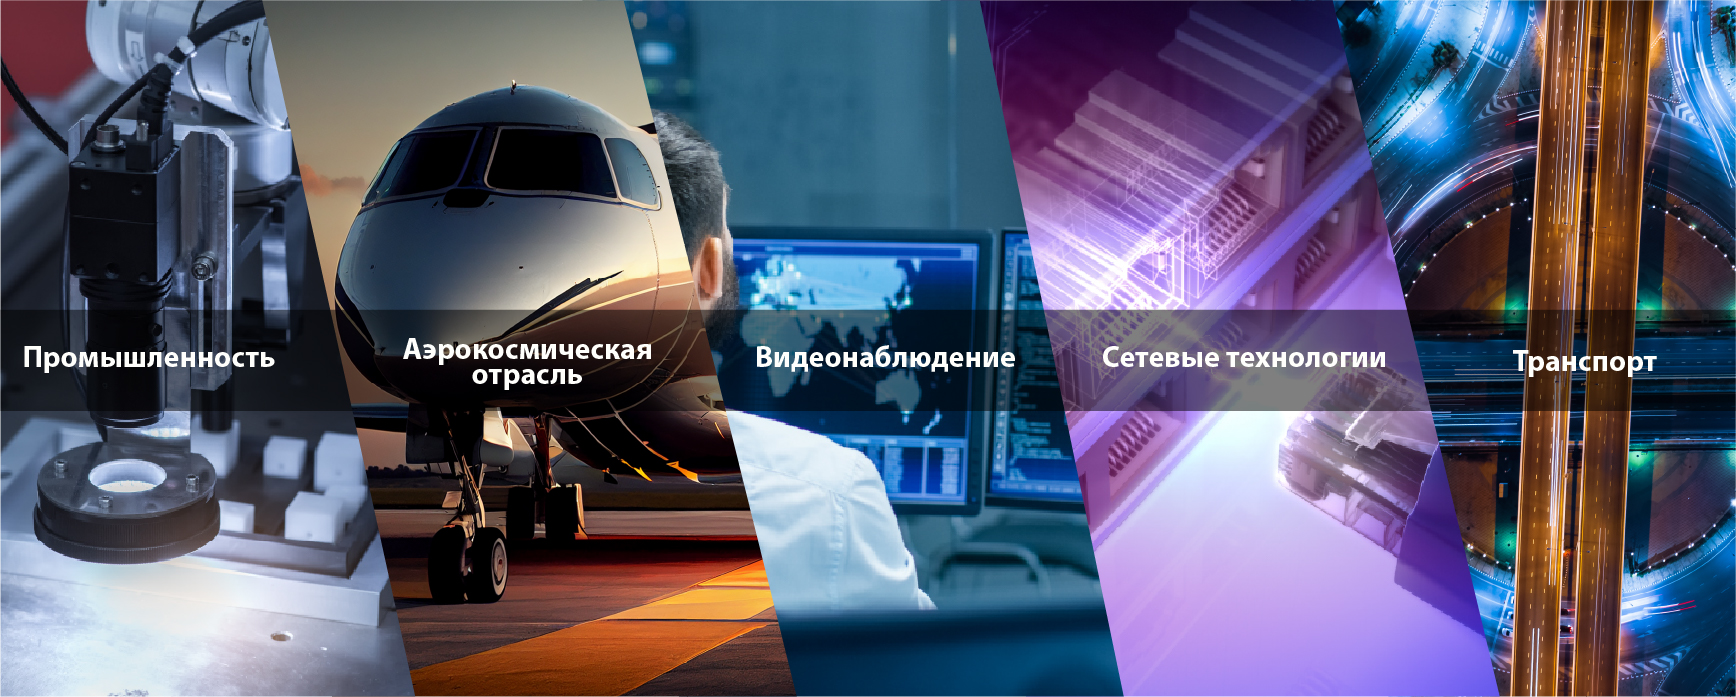 Промышленность / Аэрокосмическая отрасль / Видеонаблюдение / Сетевые технологии / Транспорт